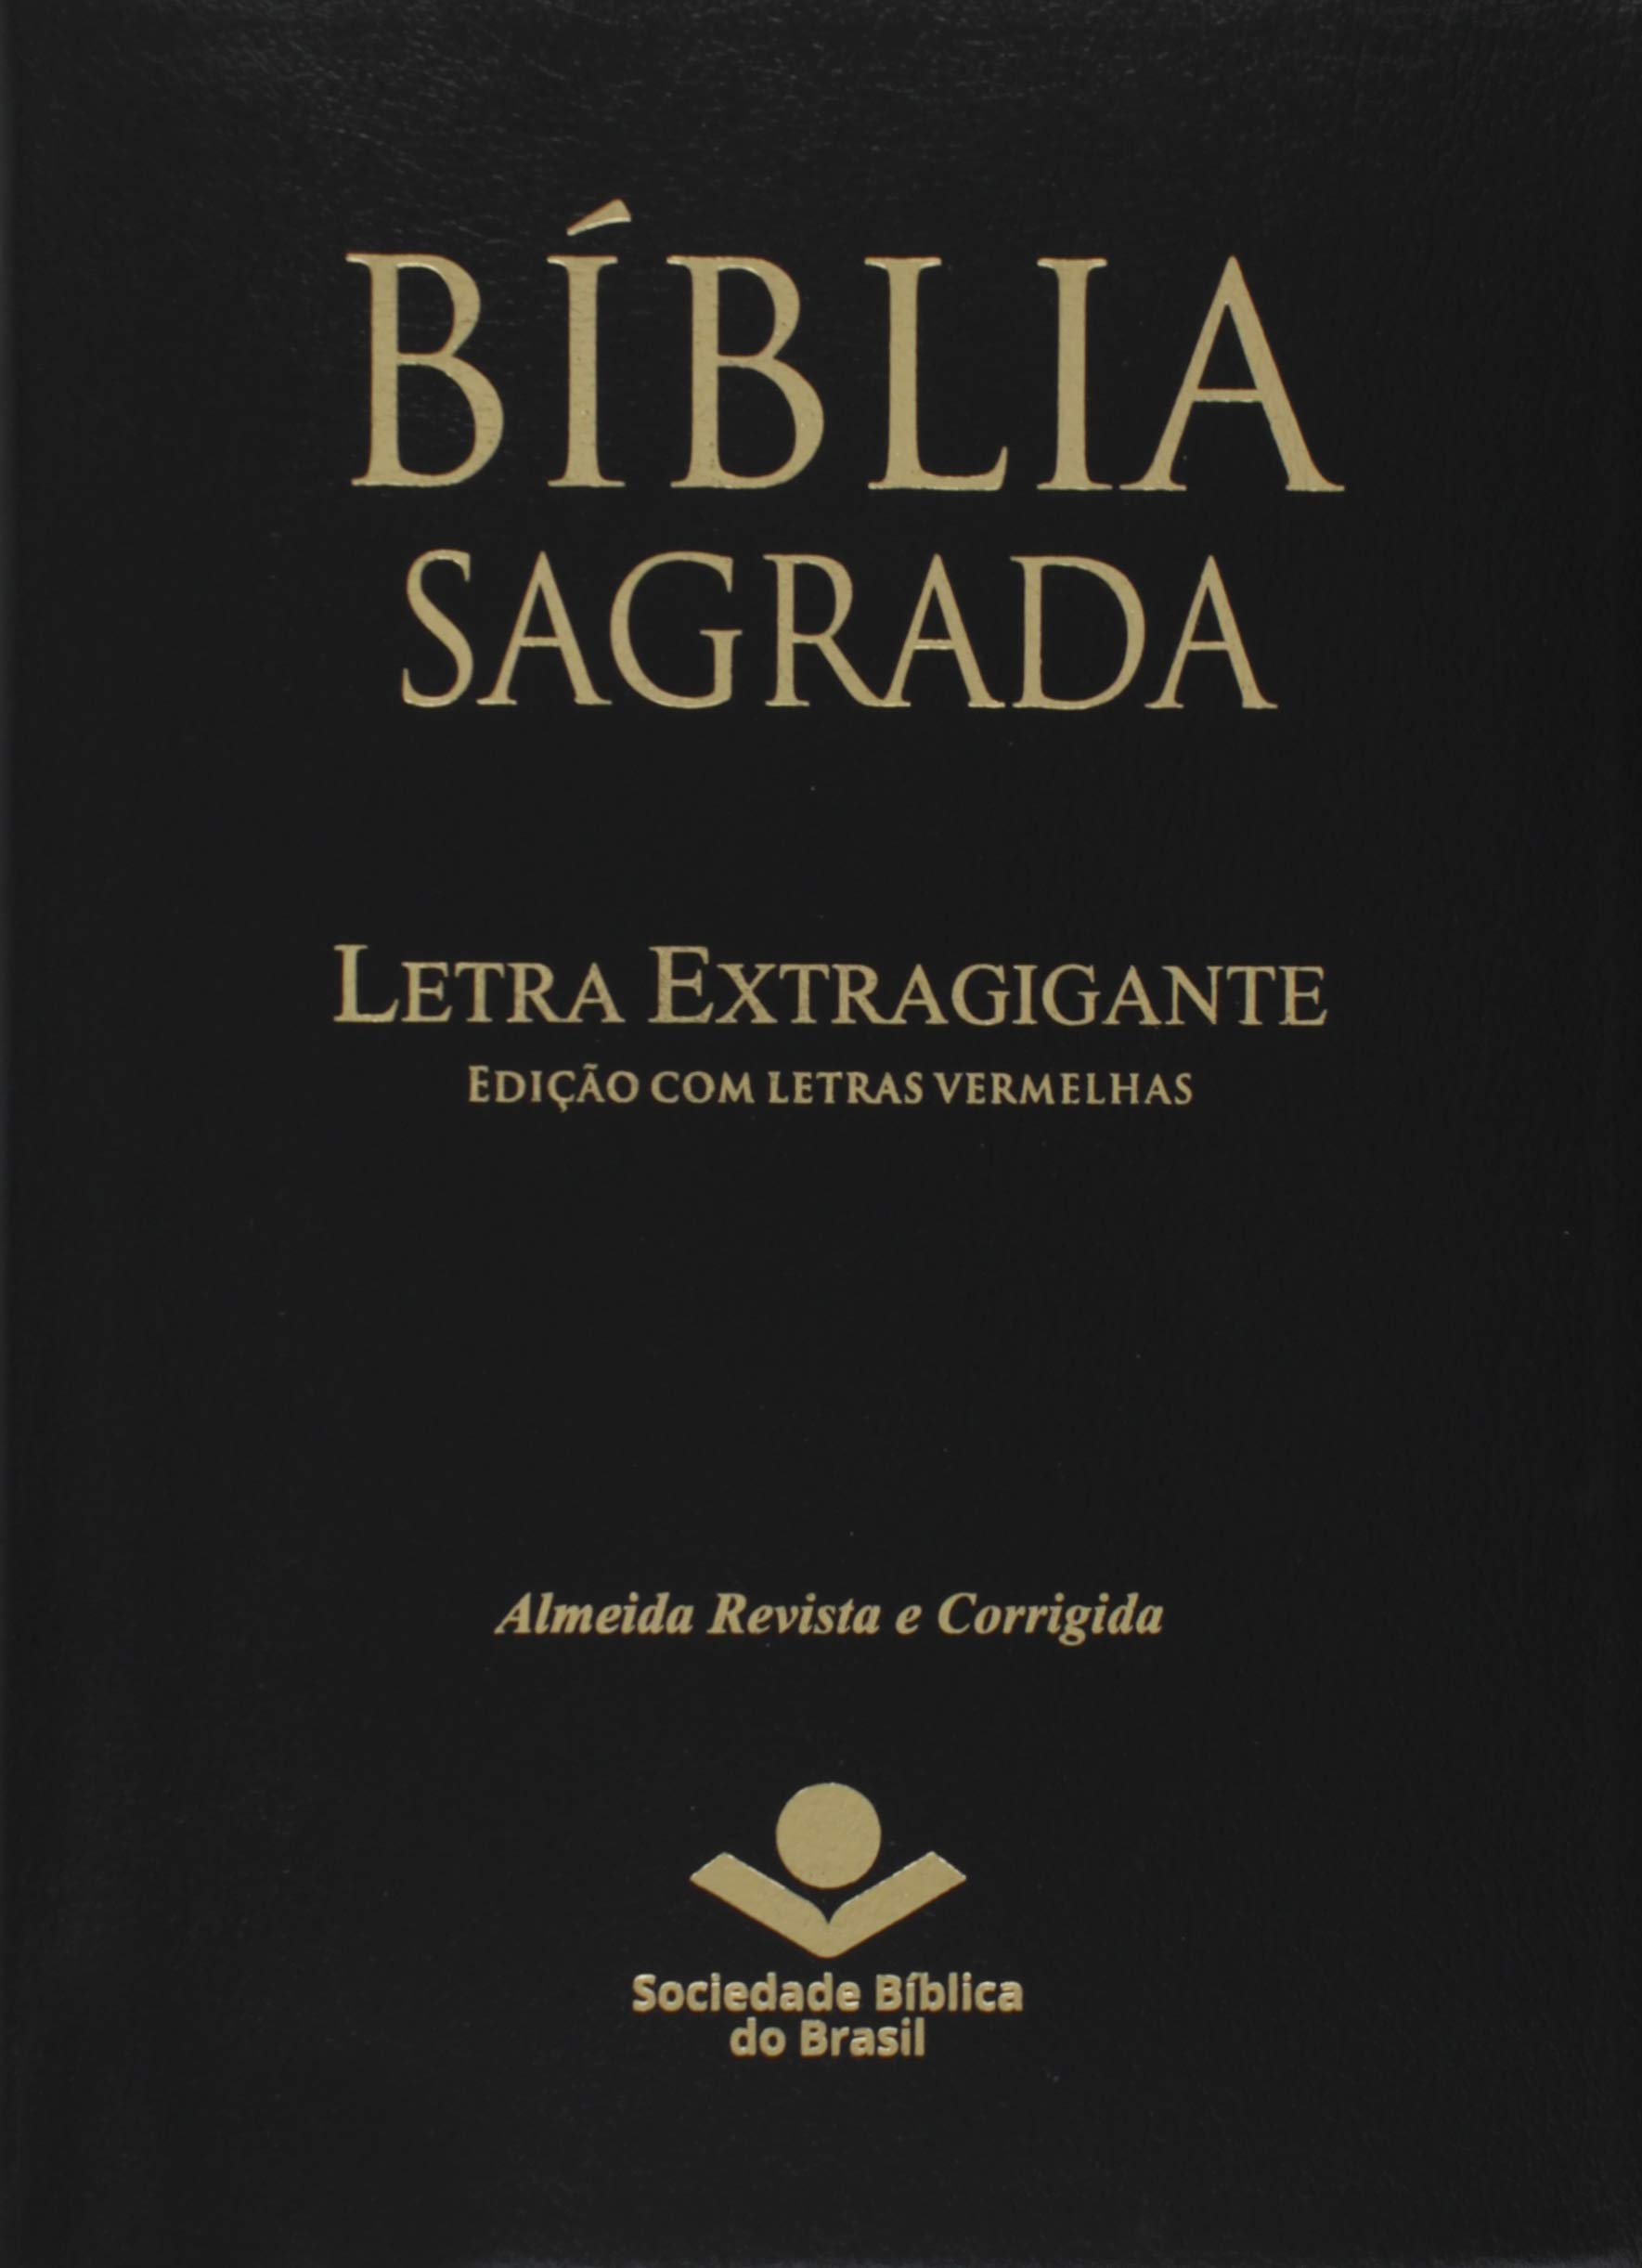 Bíblia Sagrada com letra extragigante. Edição com letras vermelhas